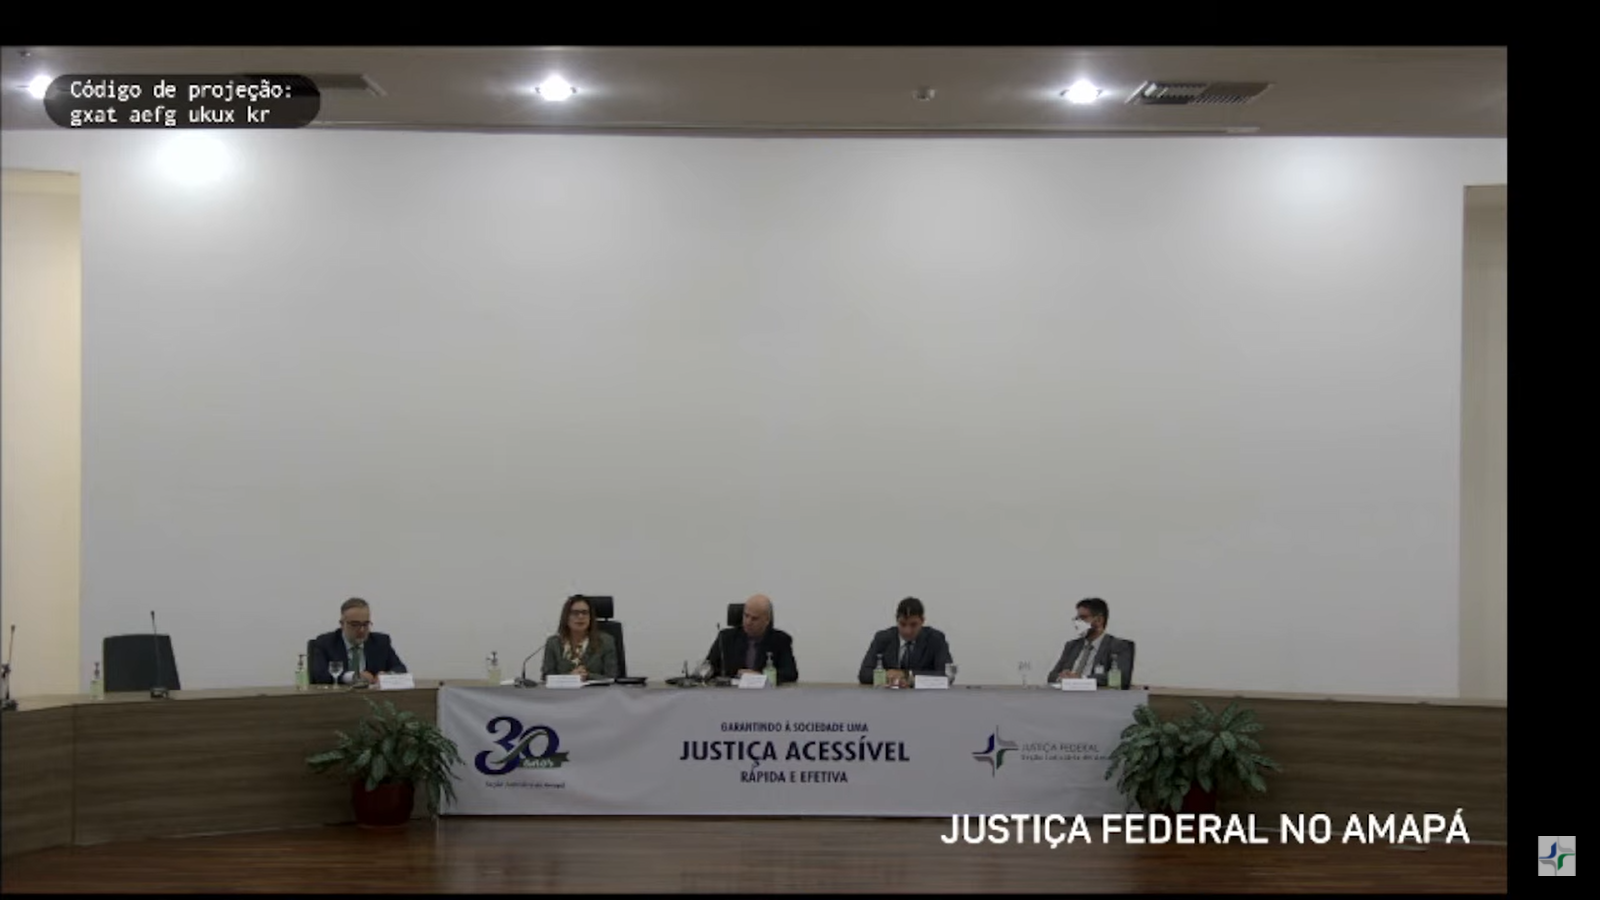 INSTITUCIONAL: Solenidade marca início da correição ordinária promovida pela Coger na Seção Judiciária do Amapá